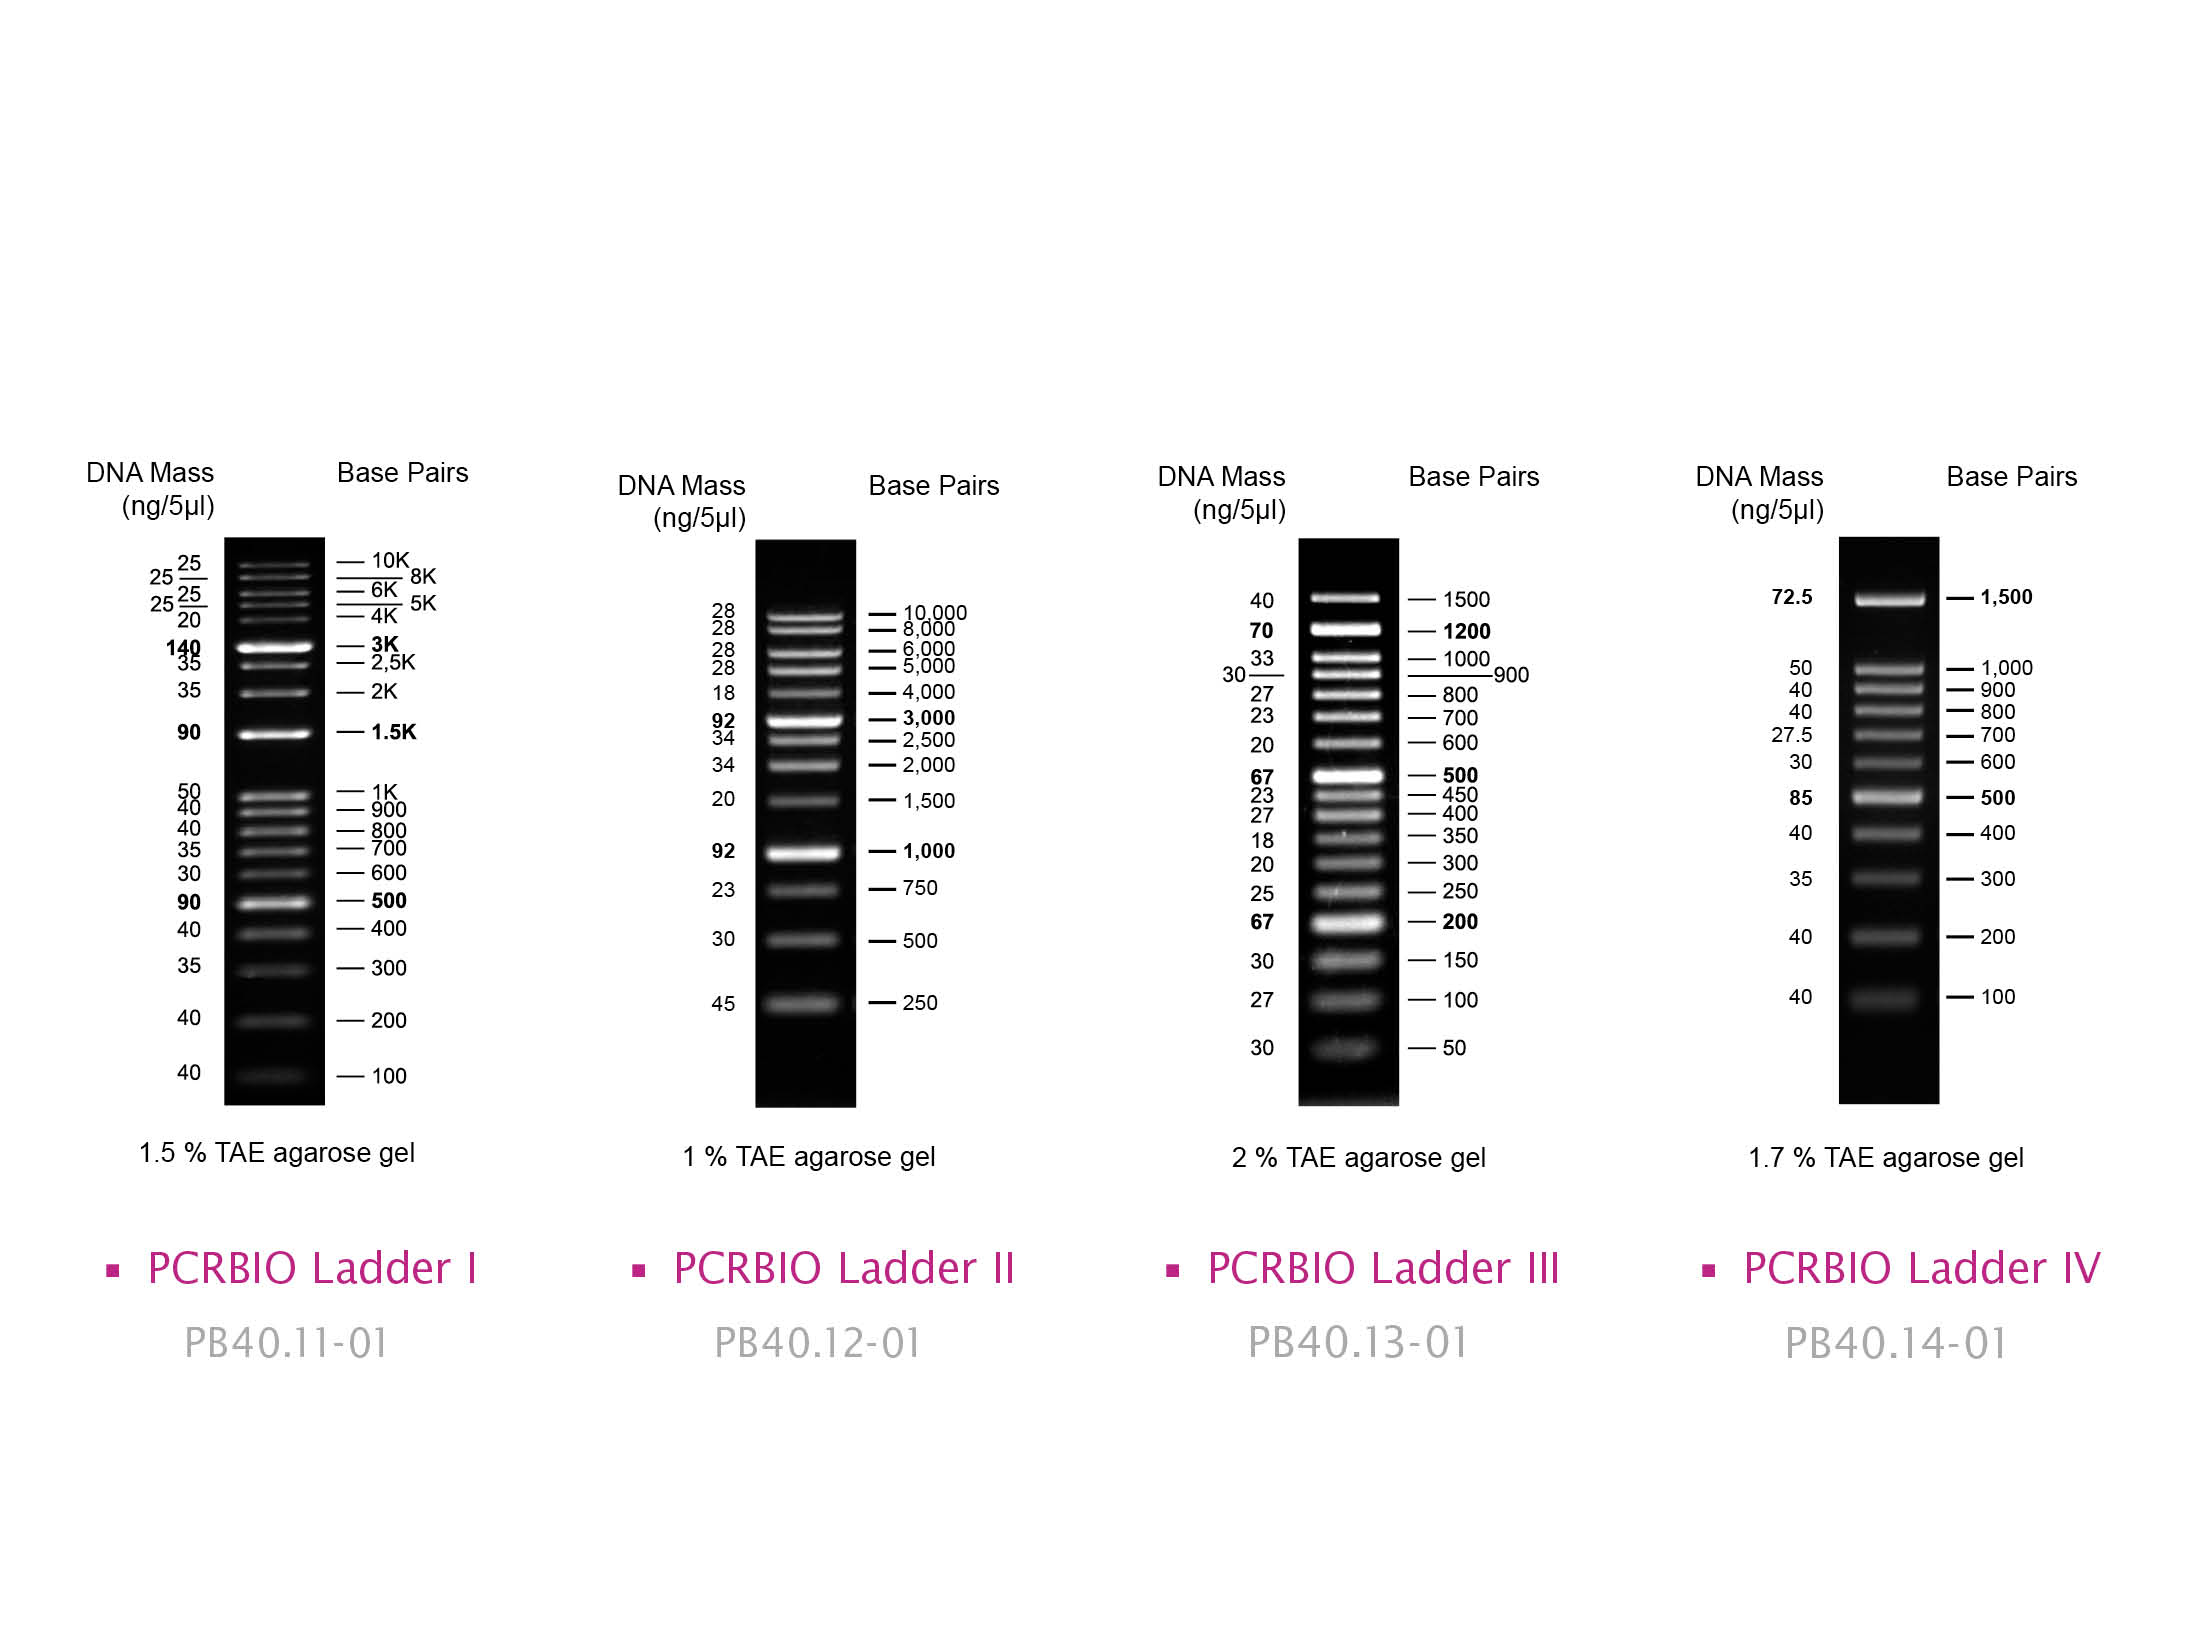 Image showing PCRBIO Ladders I-IV